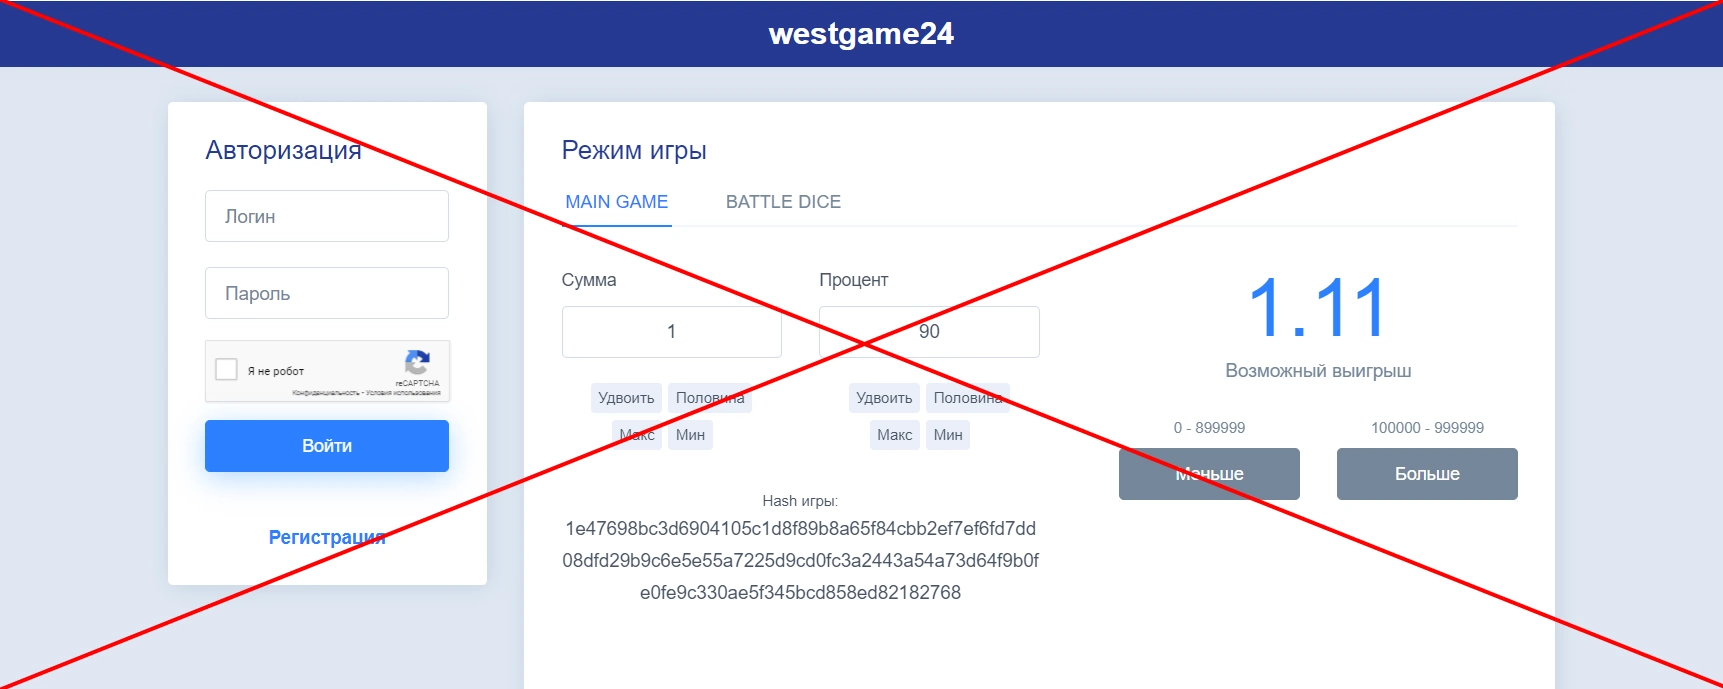 Отзывы и обзор Westgame24 - сервис игр westgame24.ru